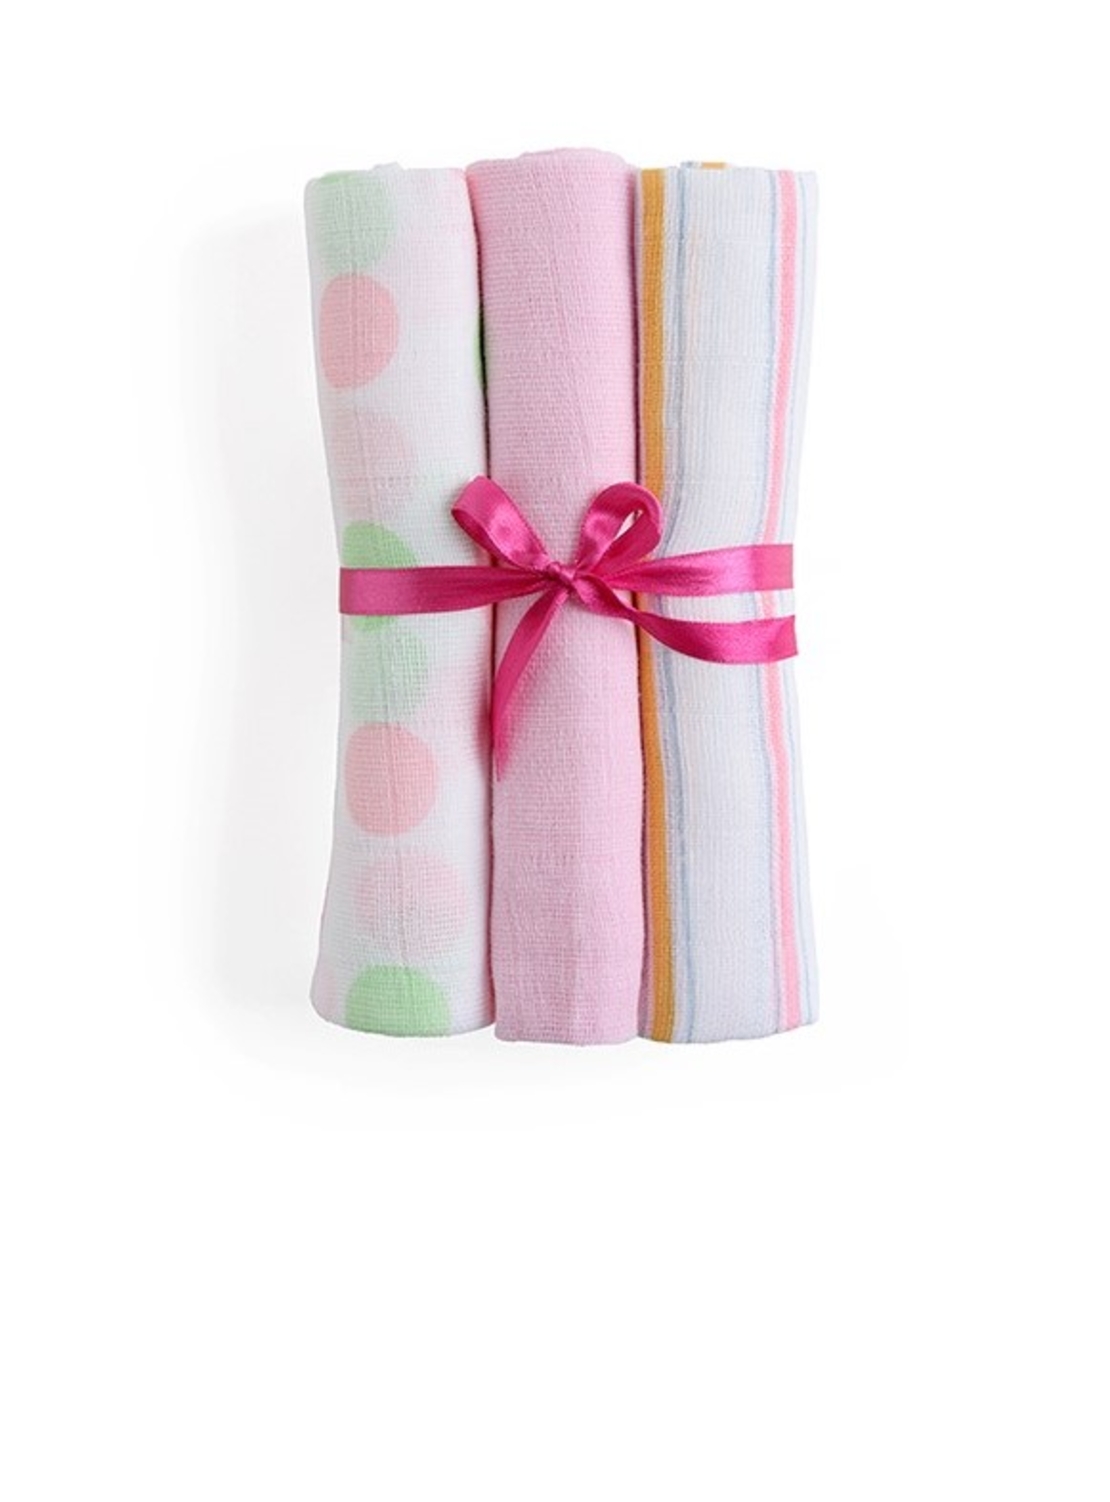 9# - מתנה לתינוקת המאושרת : שמיכה, קפוצ'ון מגבת, שלישיית חיתולי טטרה ורעשן טבעת בסל צבעוני קלוע